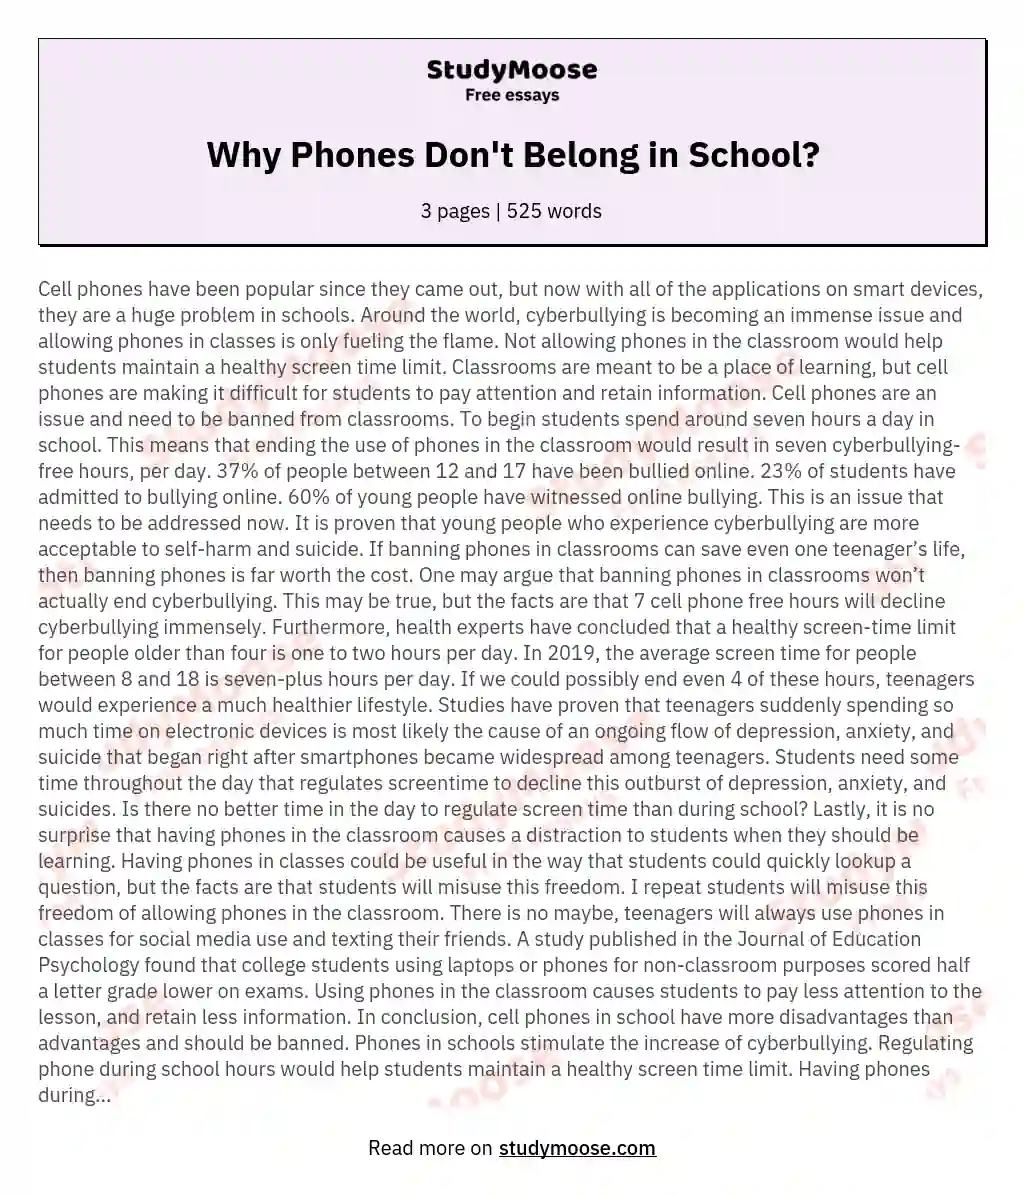 Why Phones Don't Belong in School?